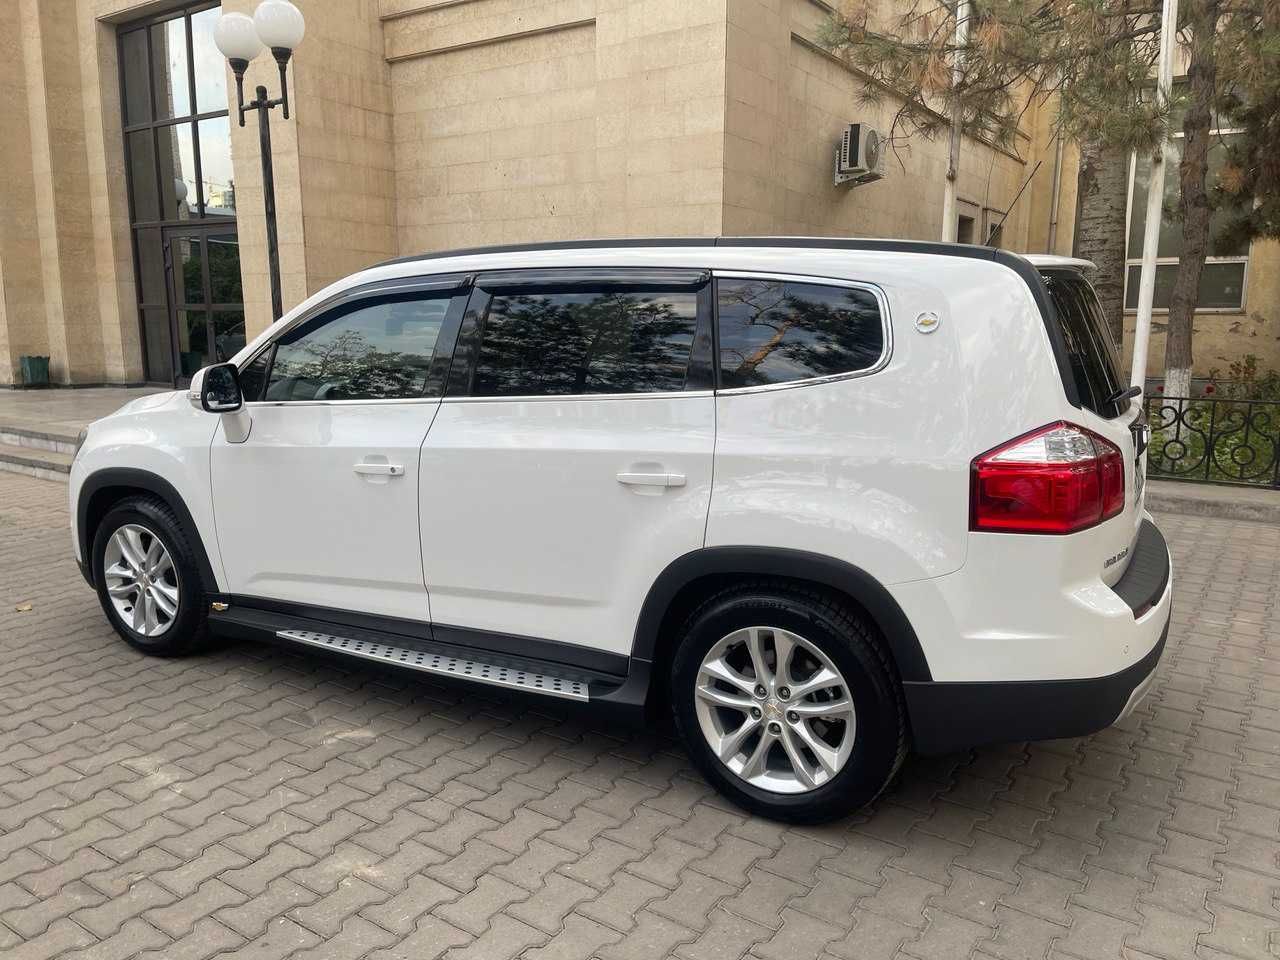 Продается белый Chevrolet Orlando 3ый поз. (2018), 17.000 км